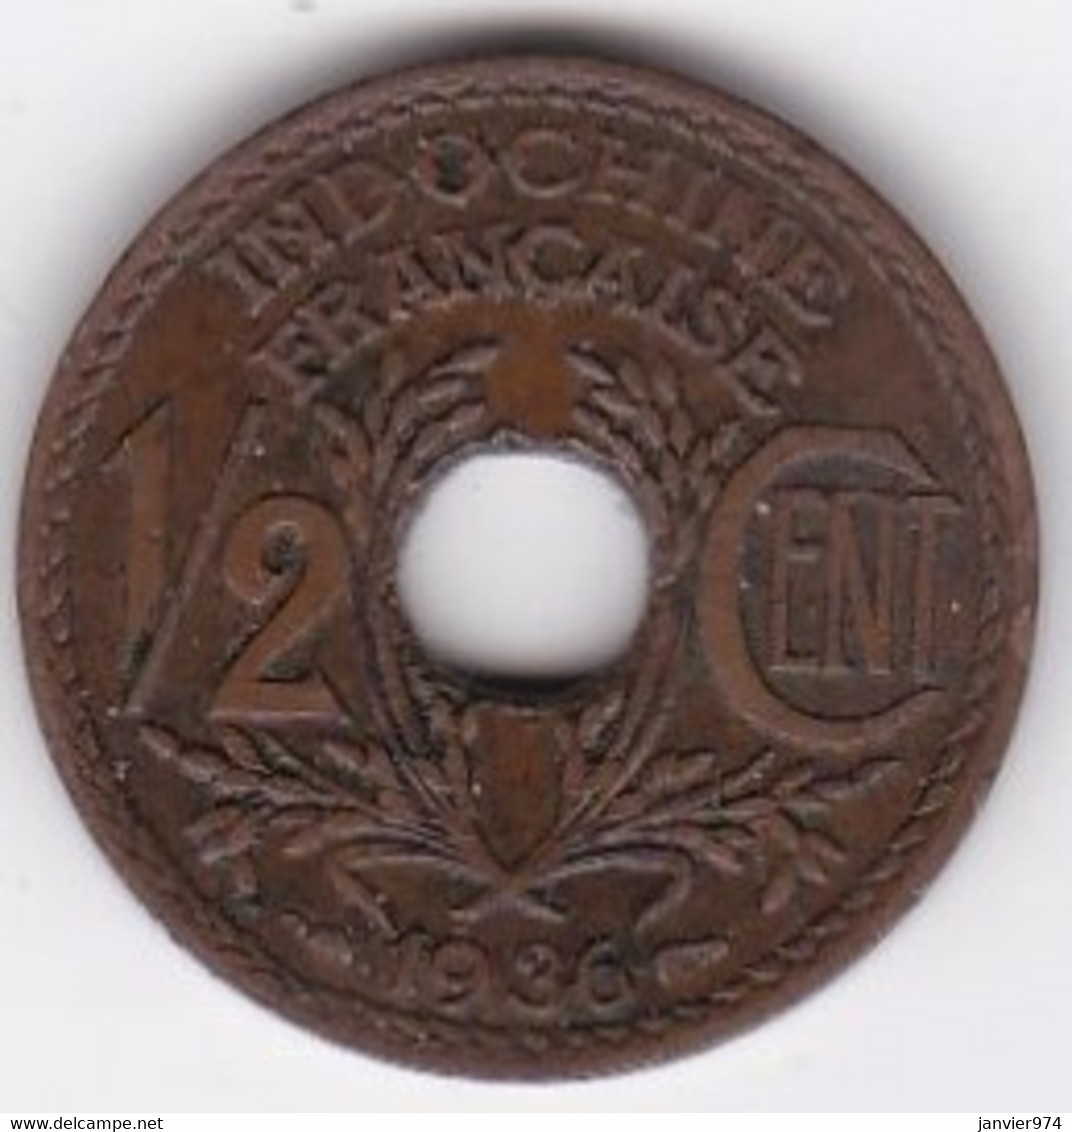 Indochine Française. 1/2 Cent 1936. En Bronze - Indochine